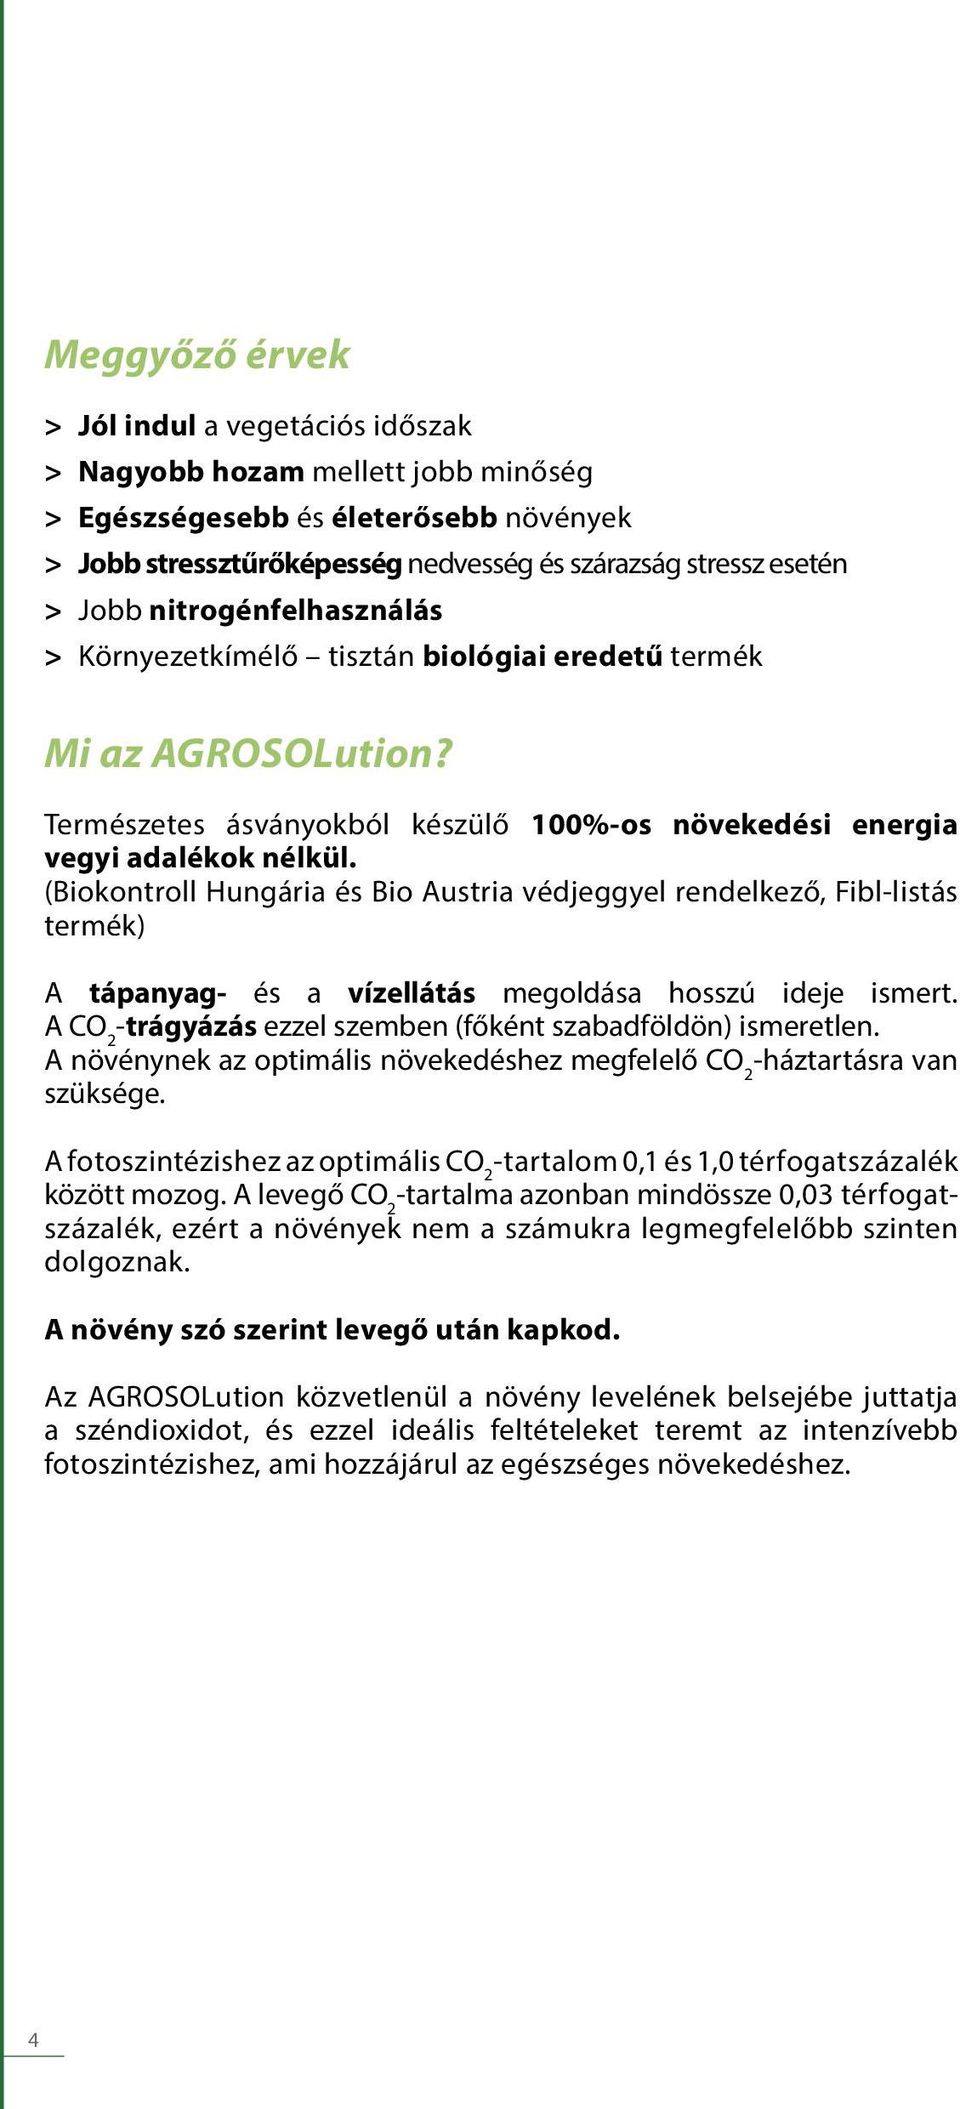 (Biokontroll Hungária és Bio Austria védjeggyel rendelkező, Fibl-listás termék) A tápanyag- és a vízellátás megoldása hosszú ideje ismert.